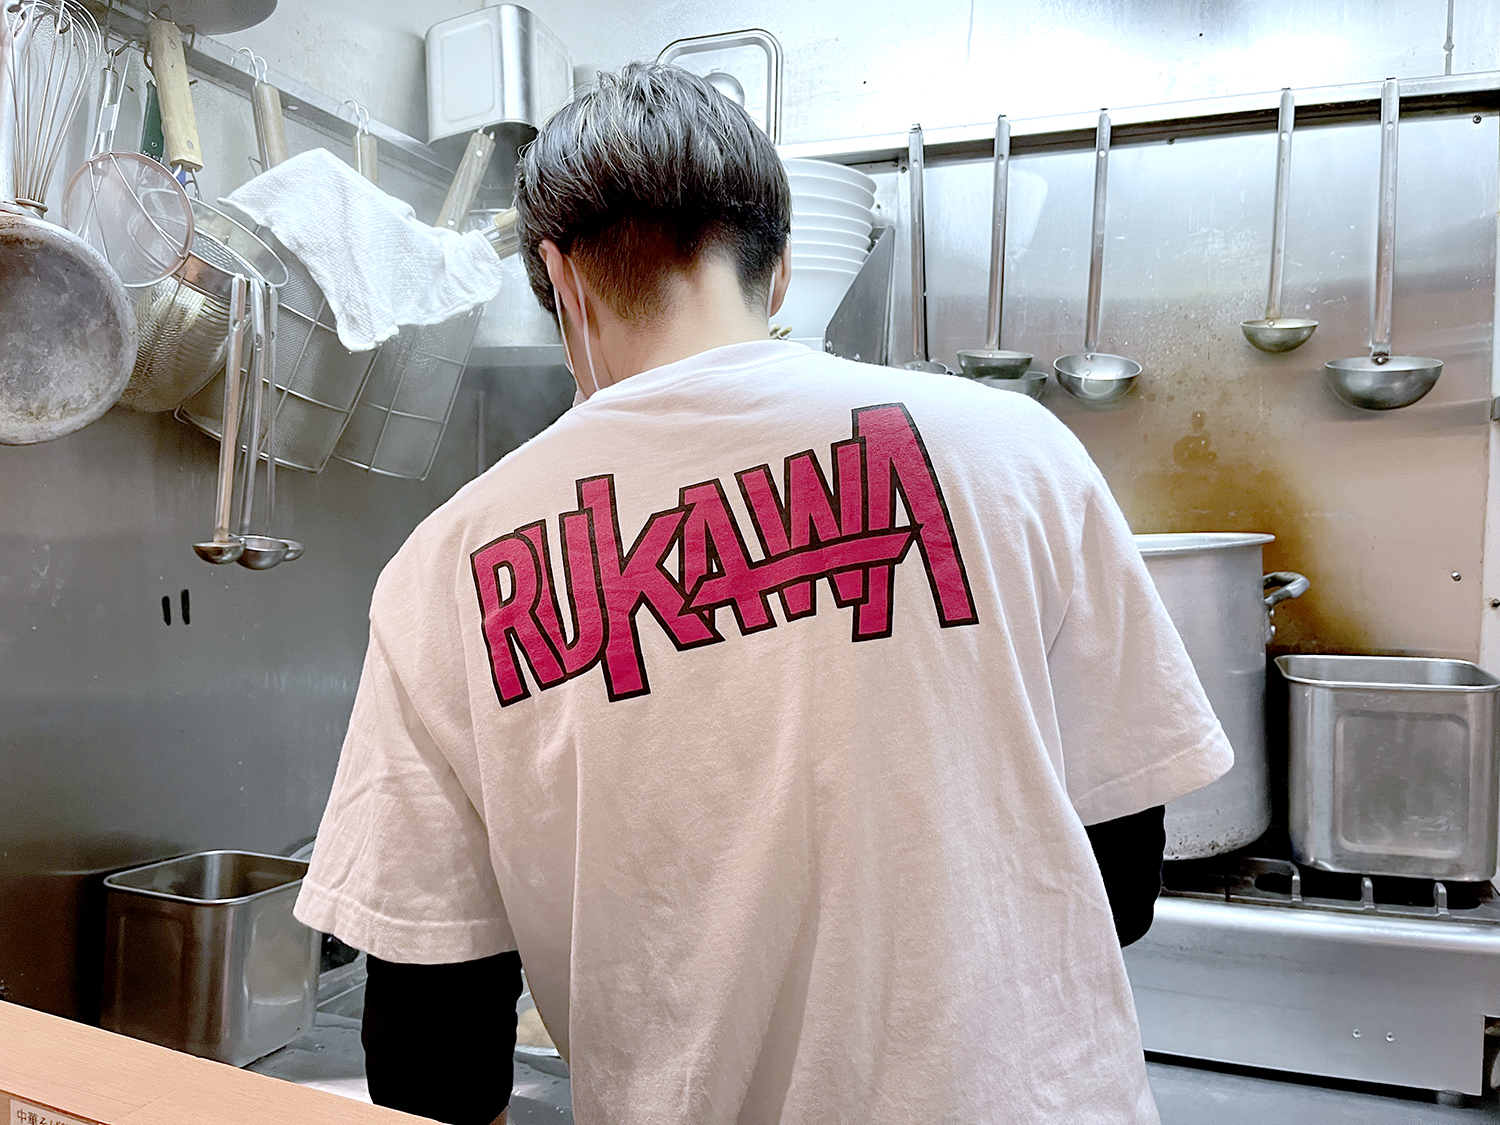 『SLAM DUNK』のロゴを彷彿とさせる『RUKAWA』のオリジナルTシャツ。背中からも愛を感じるなぁ。